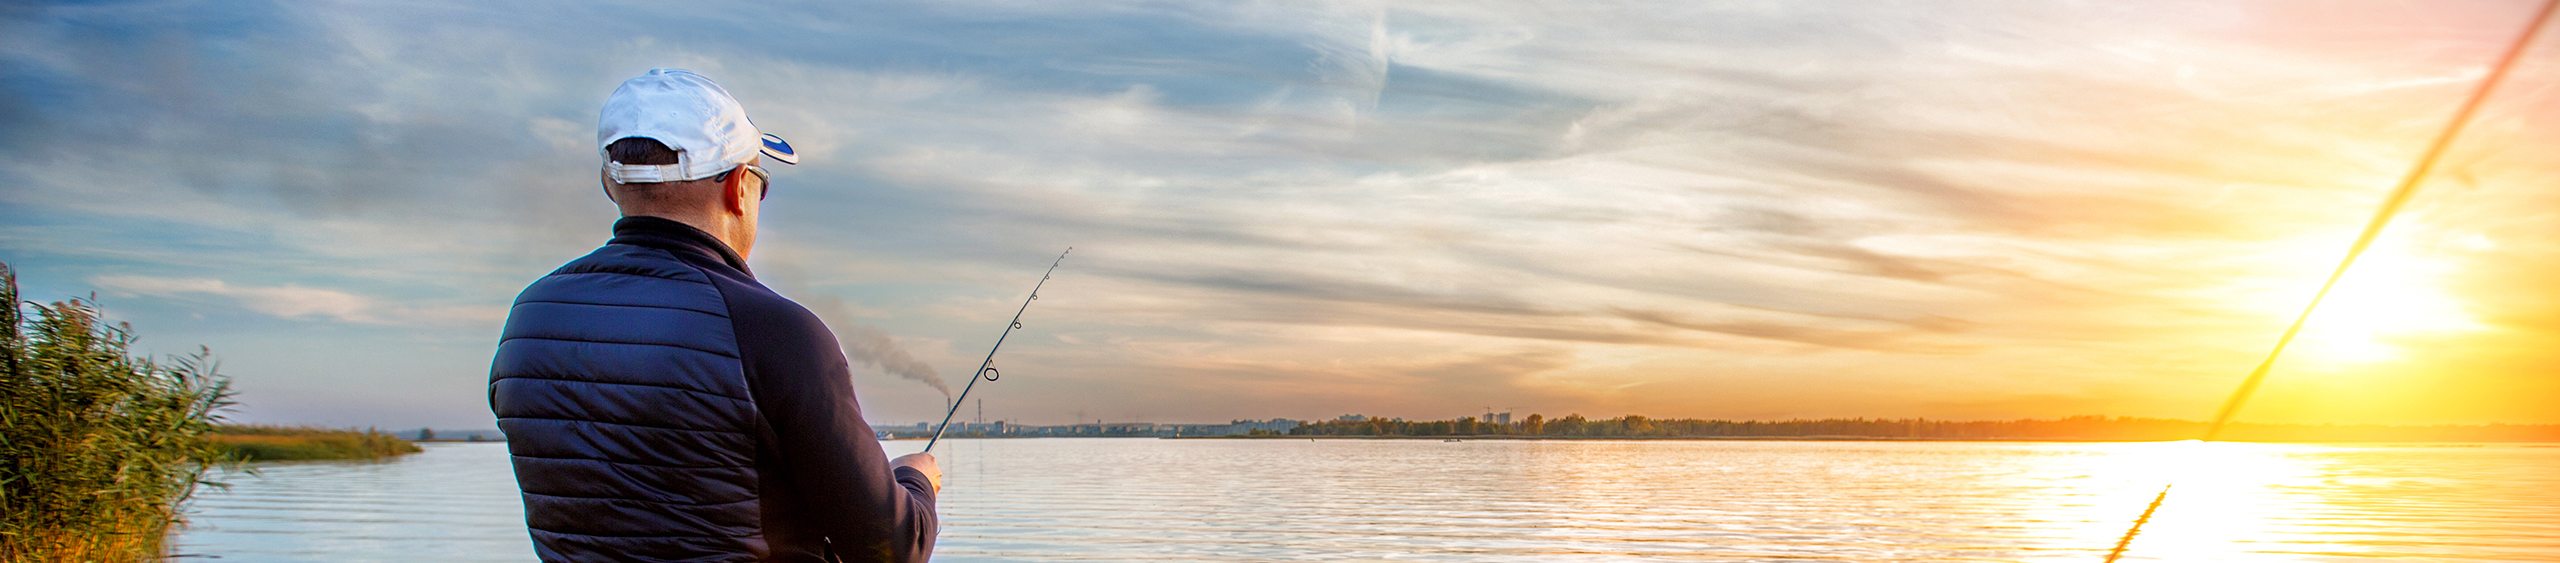 walleye fishing on leech lake